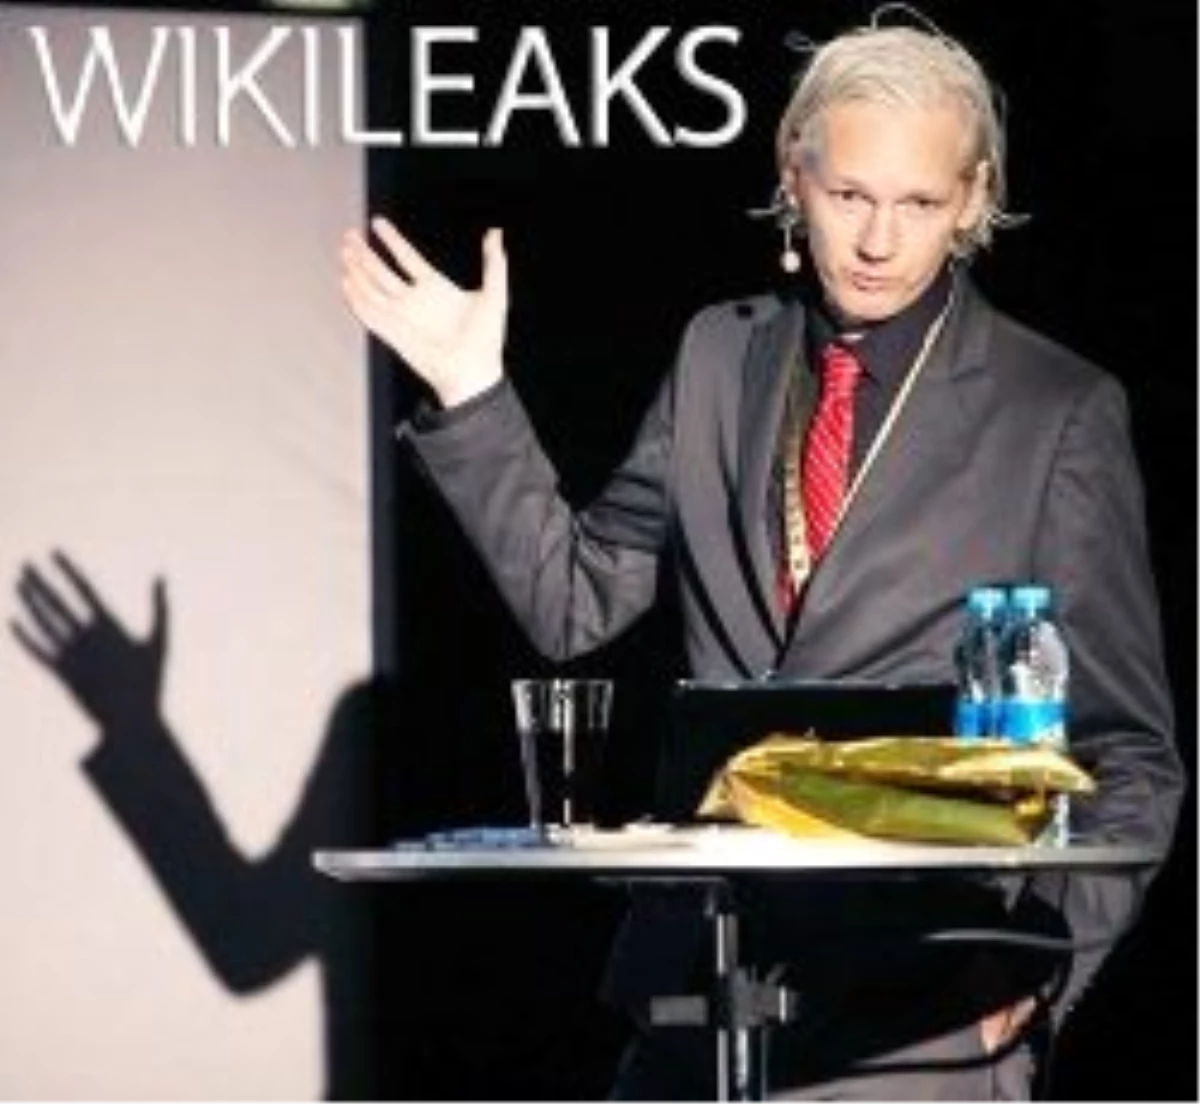 "Wikileasks\' Dünyayı Yok Etmek İstiyor"